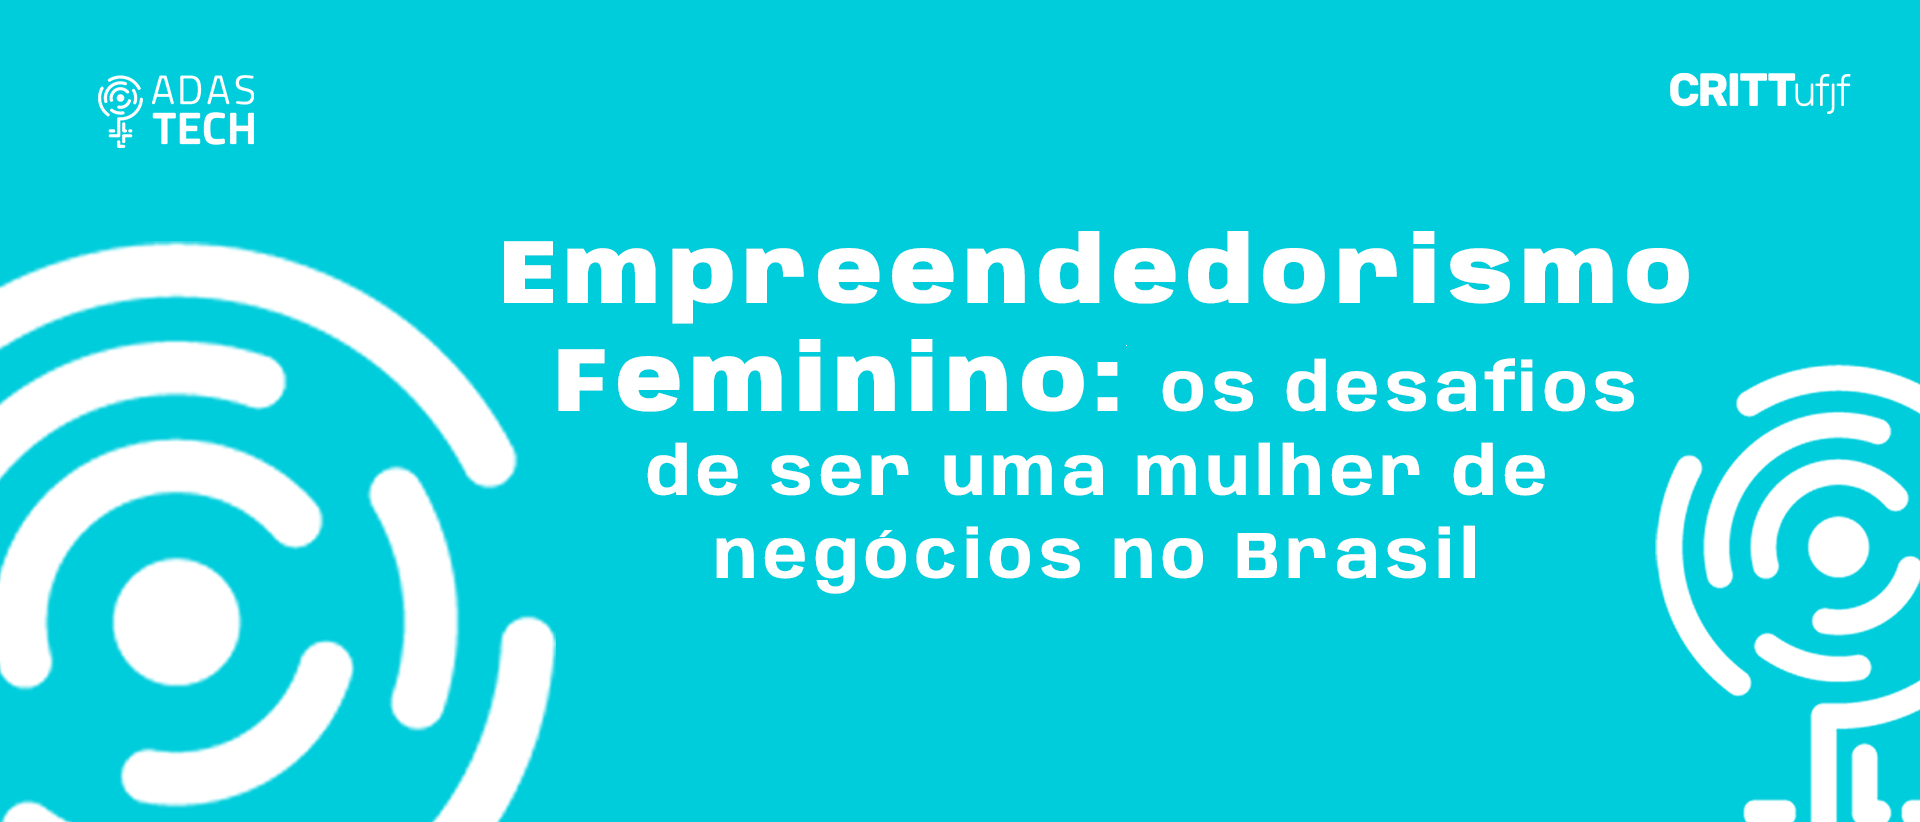 Empreendedorismo feminino: os desafios de ser uma mulher de negócios no Brasil